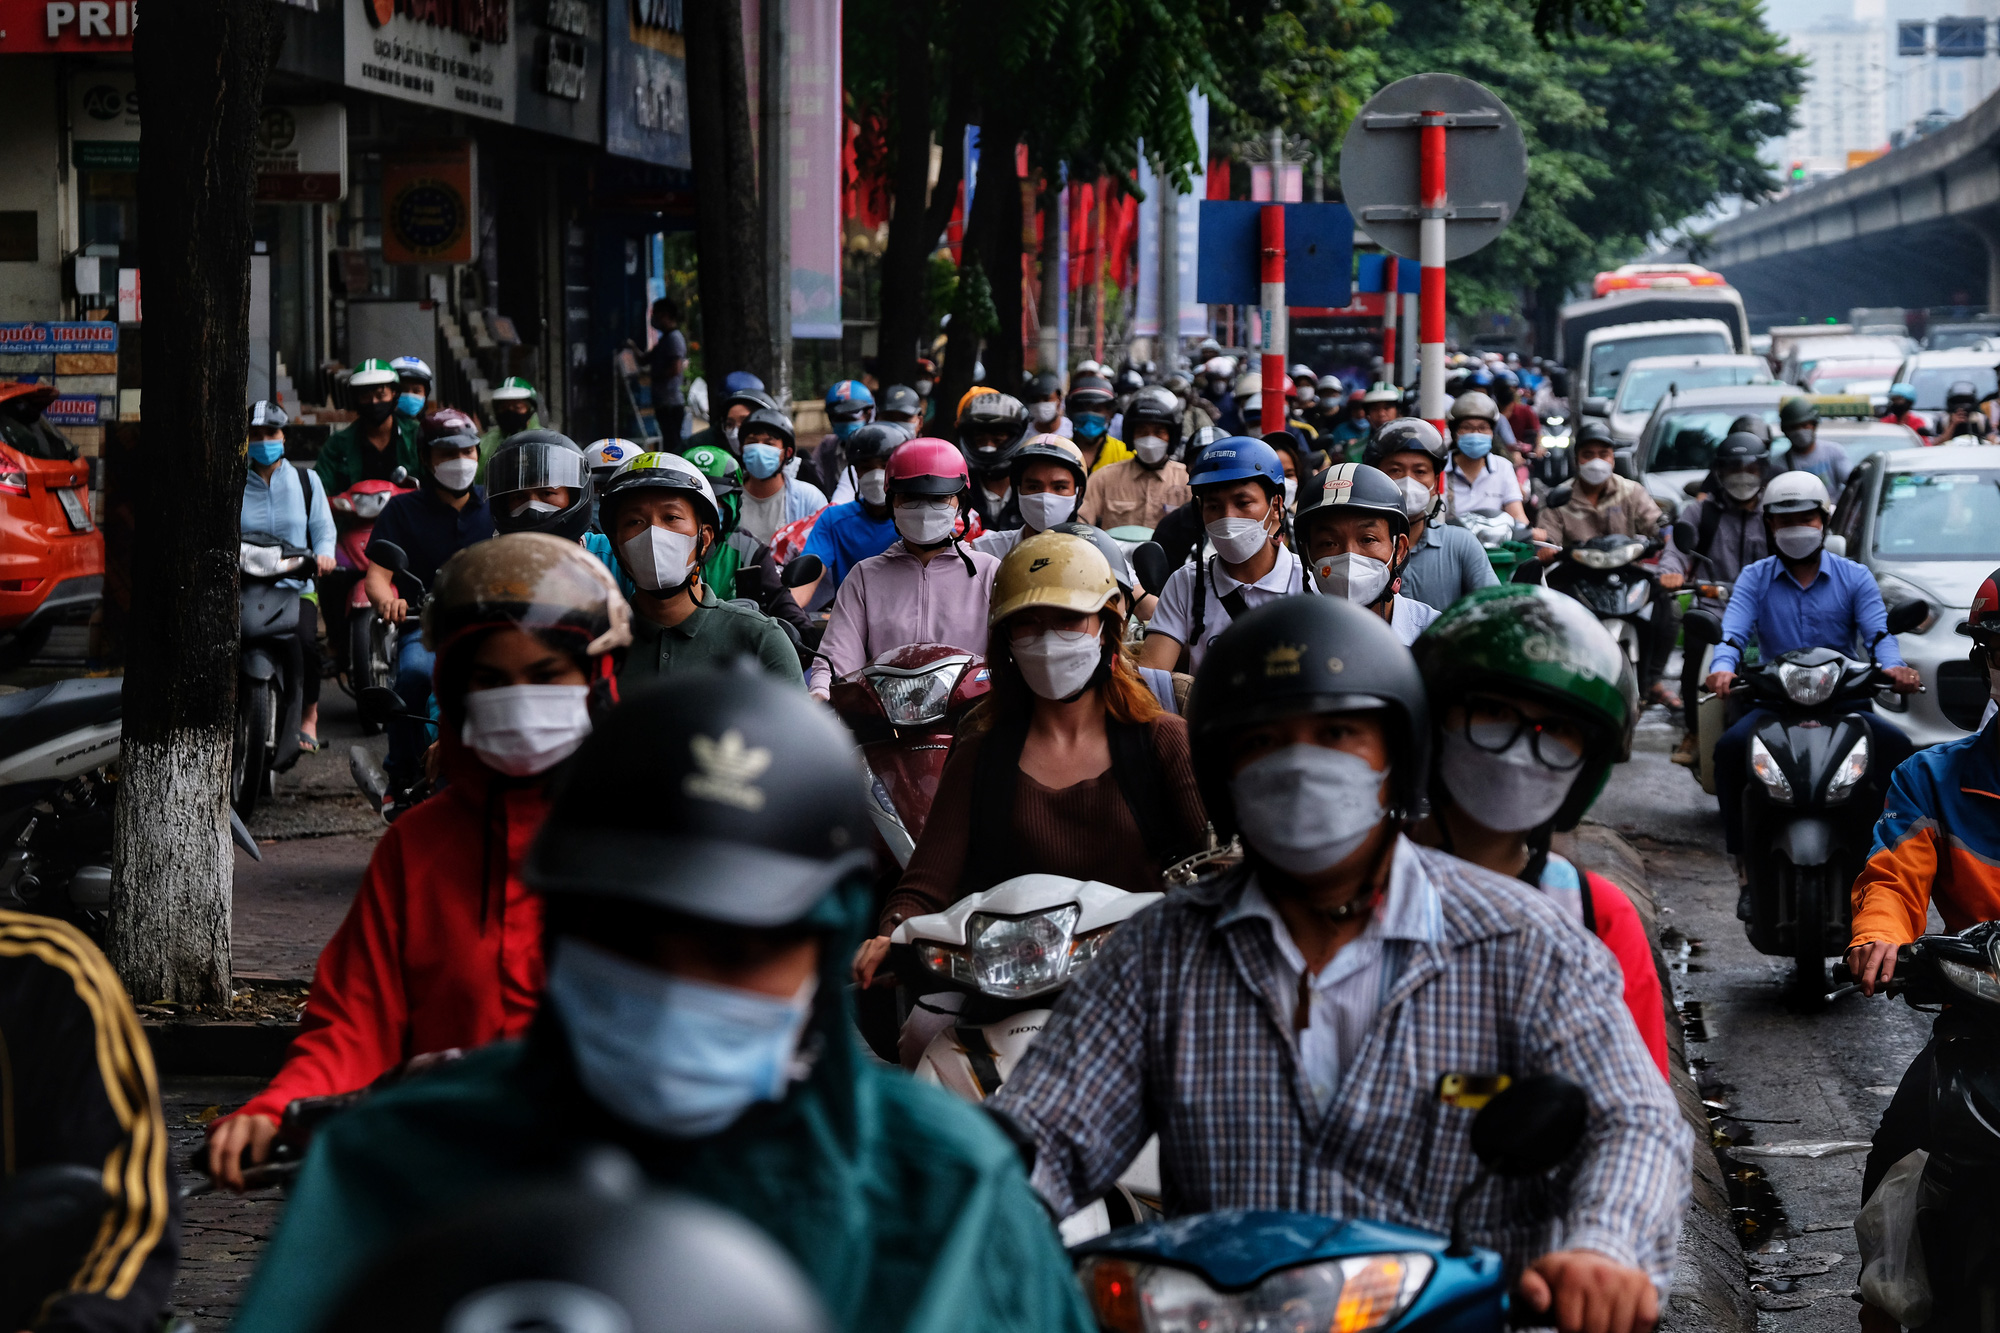 CẤP BÁO: Đường phố Hà Nội đang kẹt cứng, hàng nghìn người về quê nghỉ lễ chôn chân dưới cơn mưa nặng hạt - Ảnh 5.